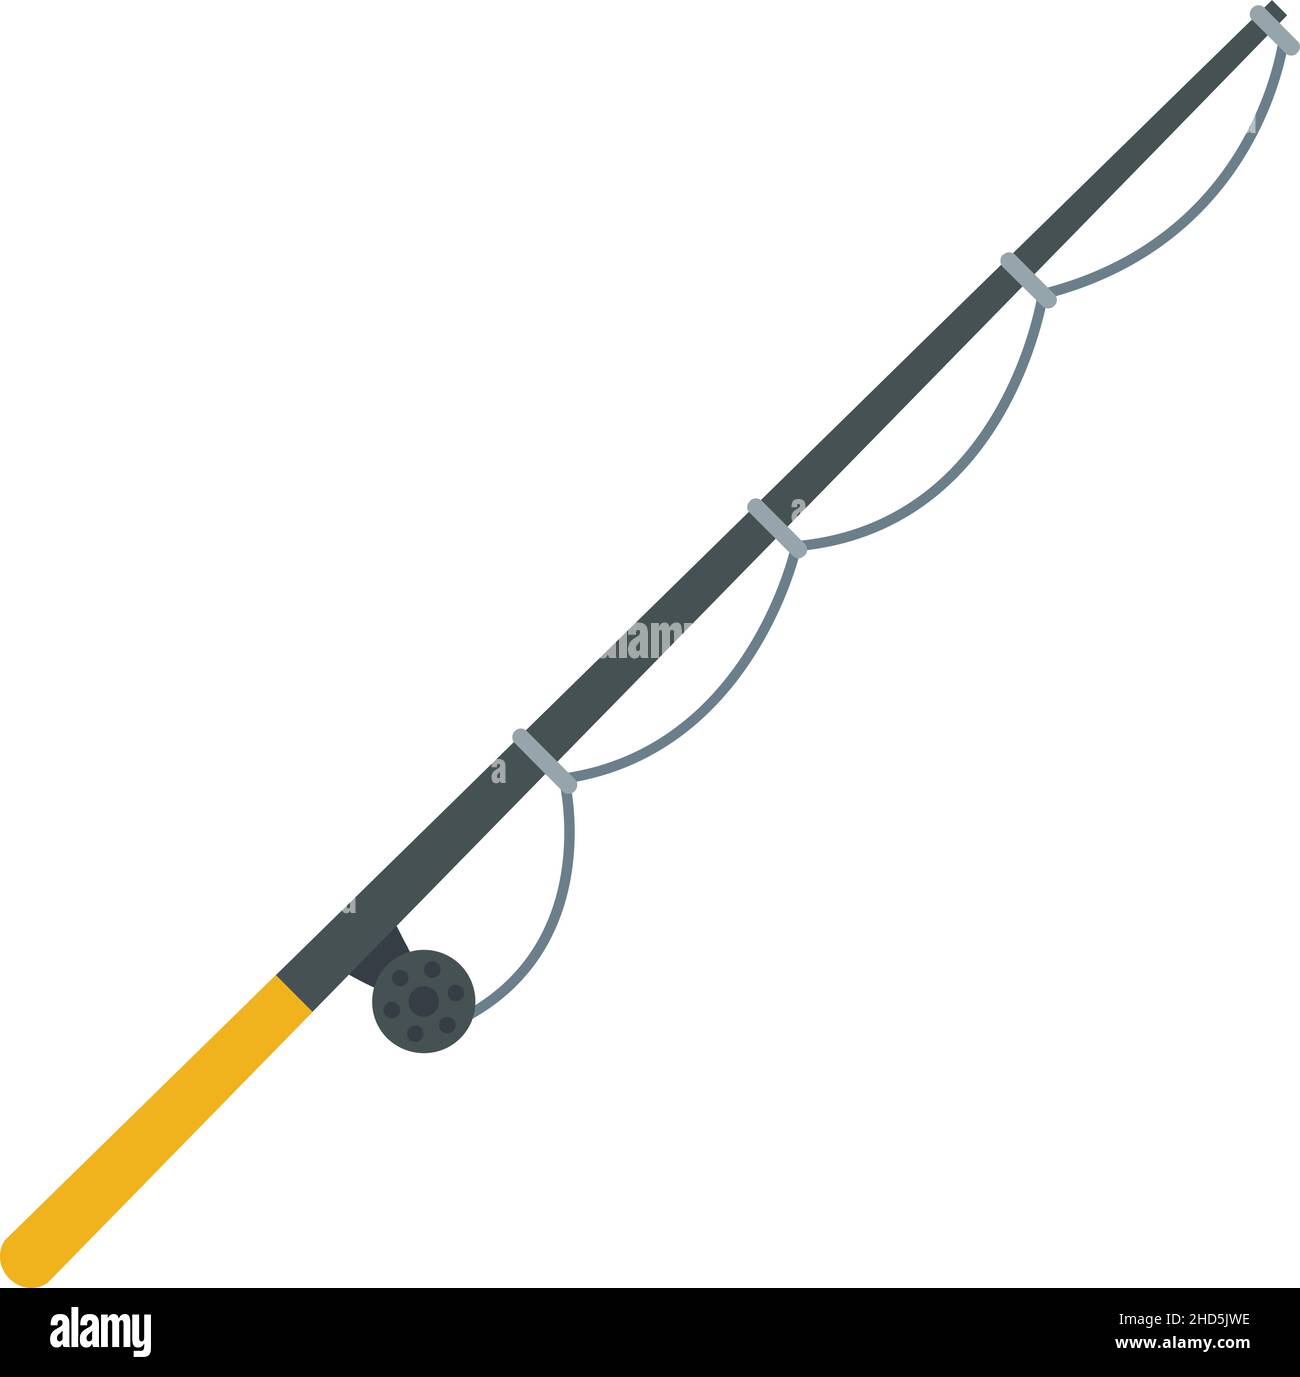 Fishing rod extreme icon. Flat illustration of fishing rod extreme